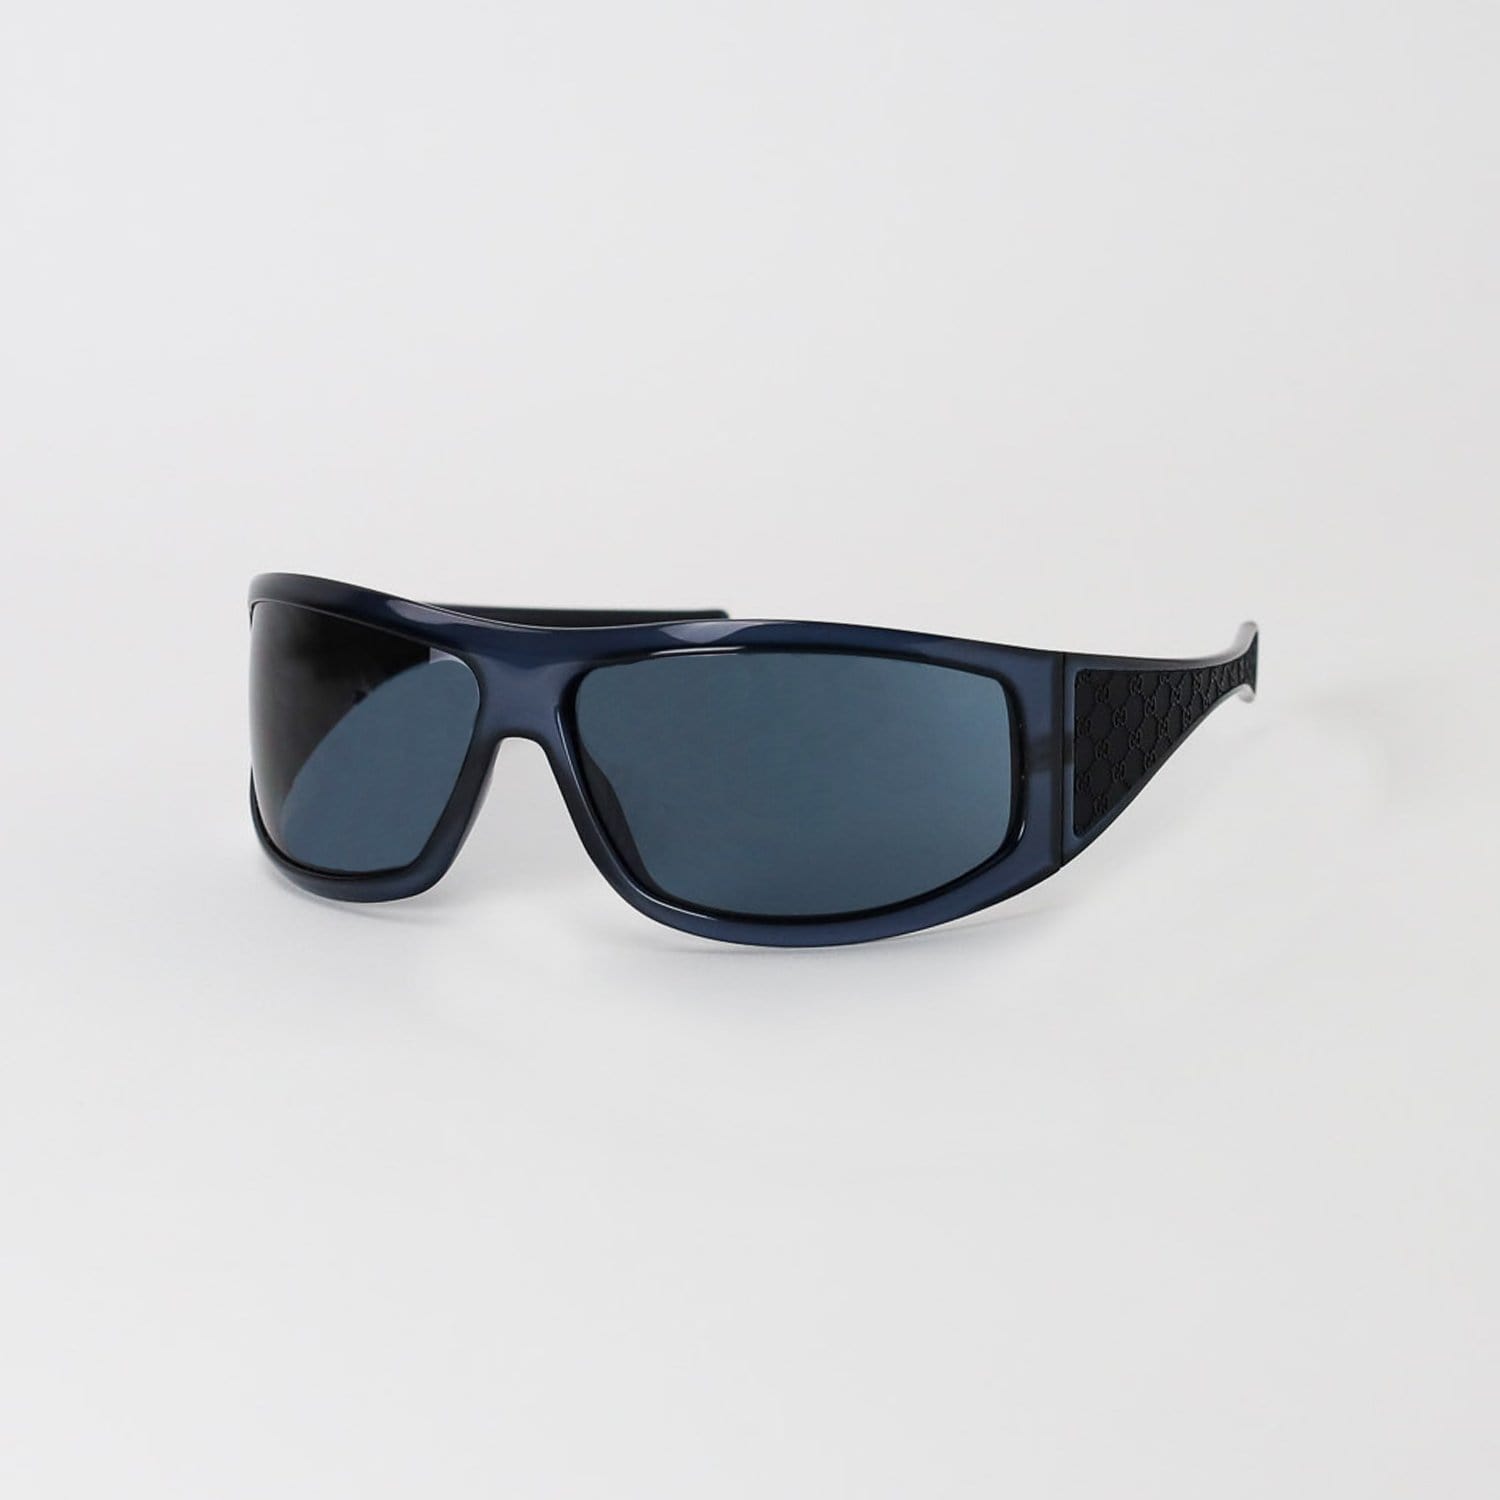 gucci sunglasses blue